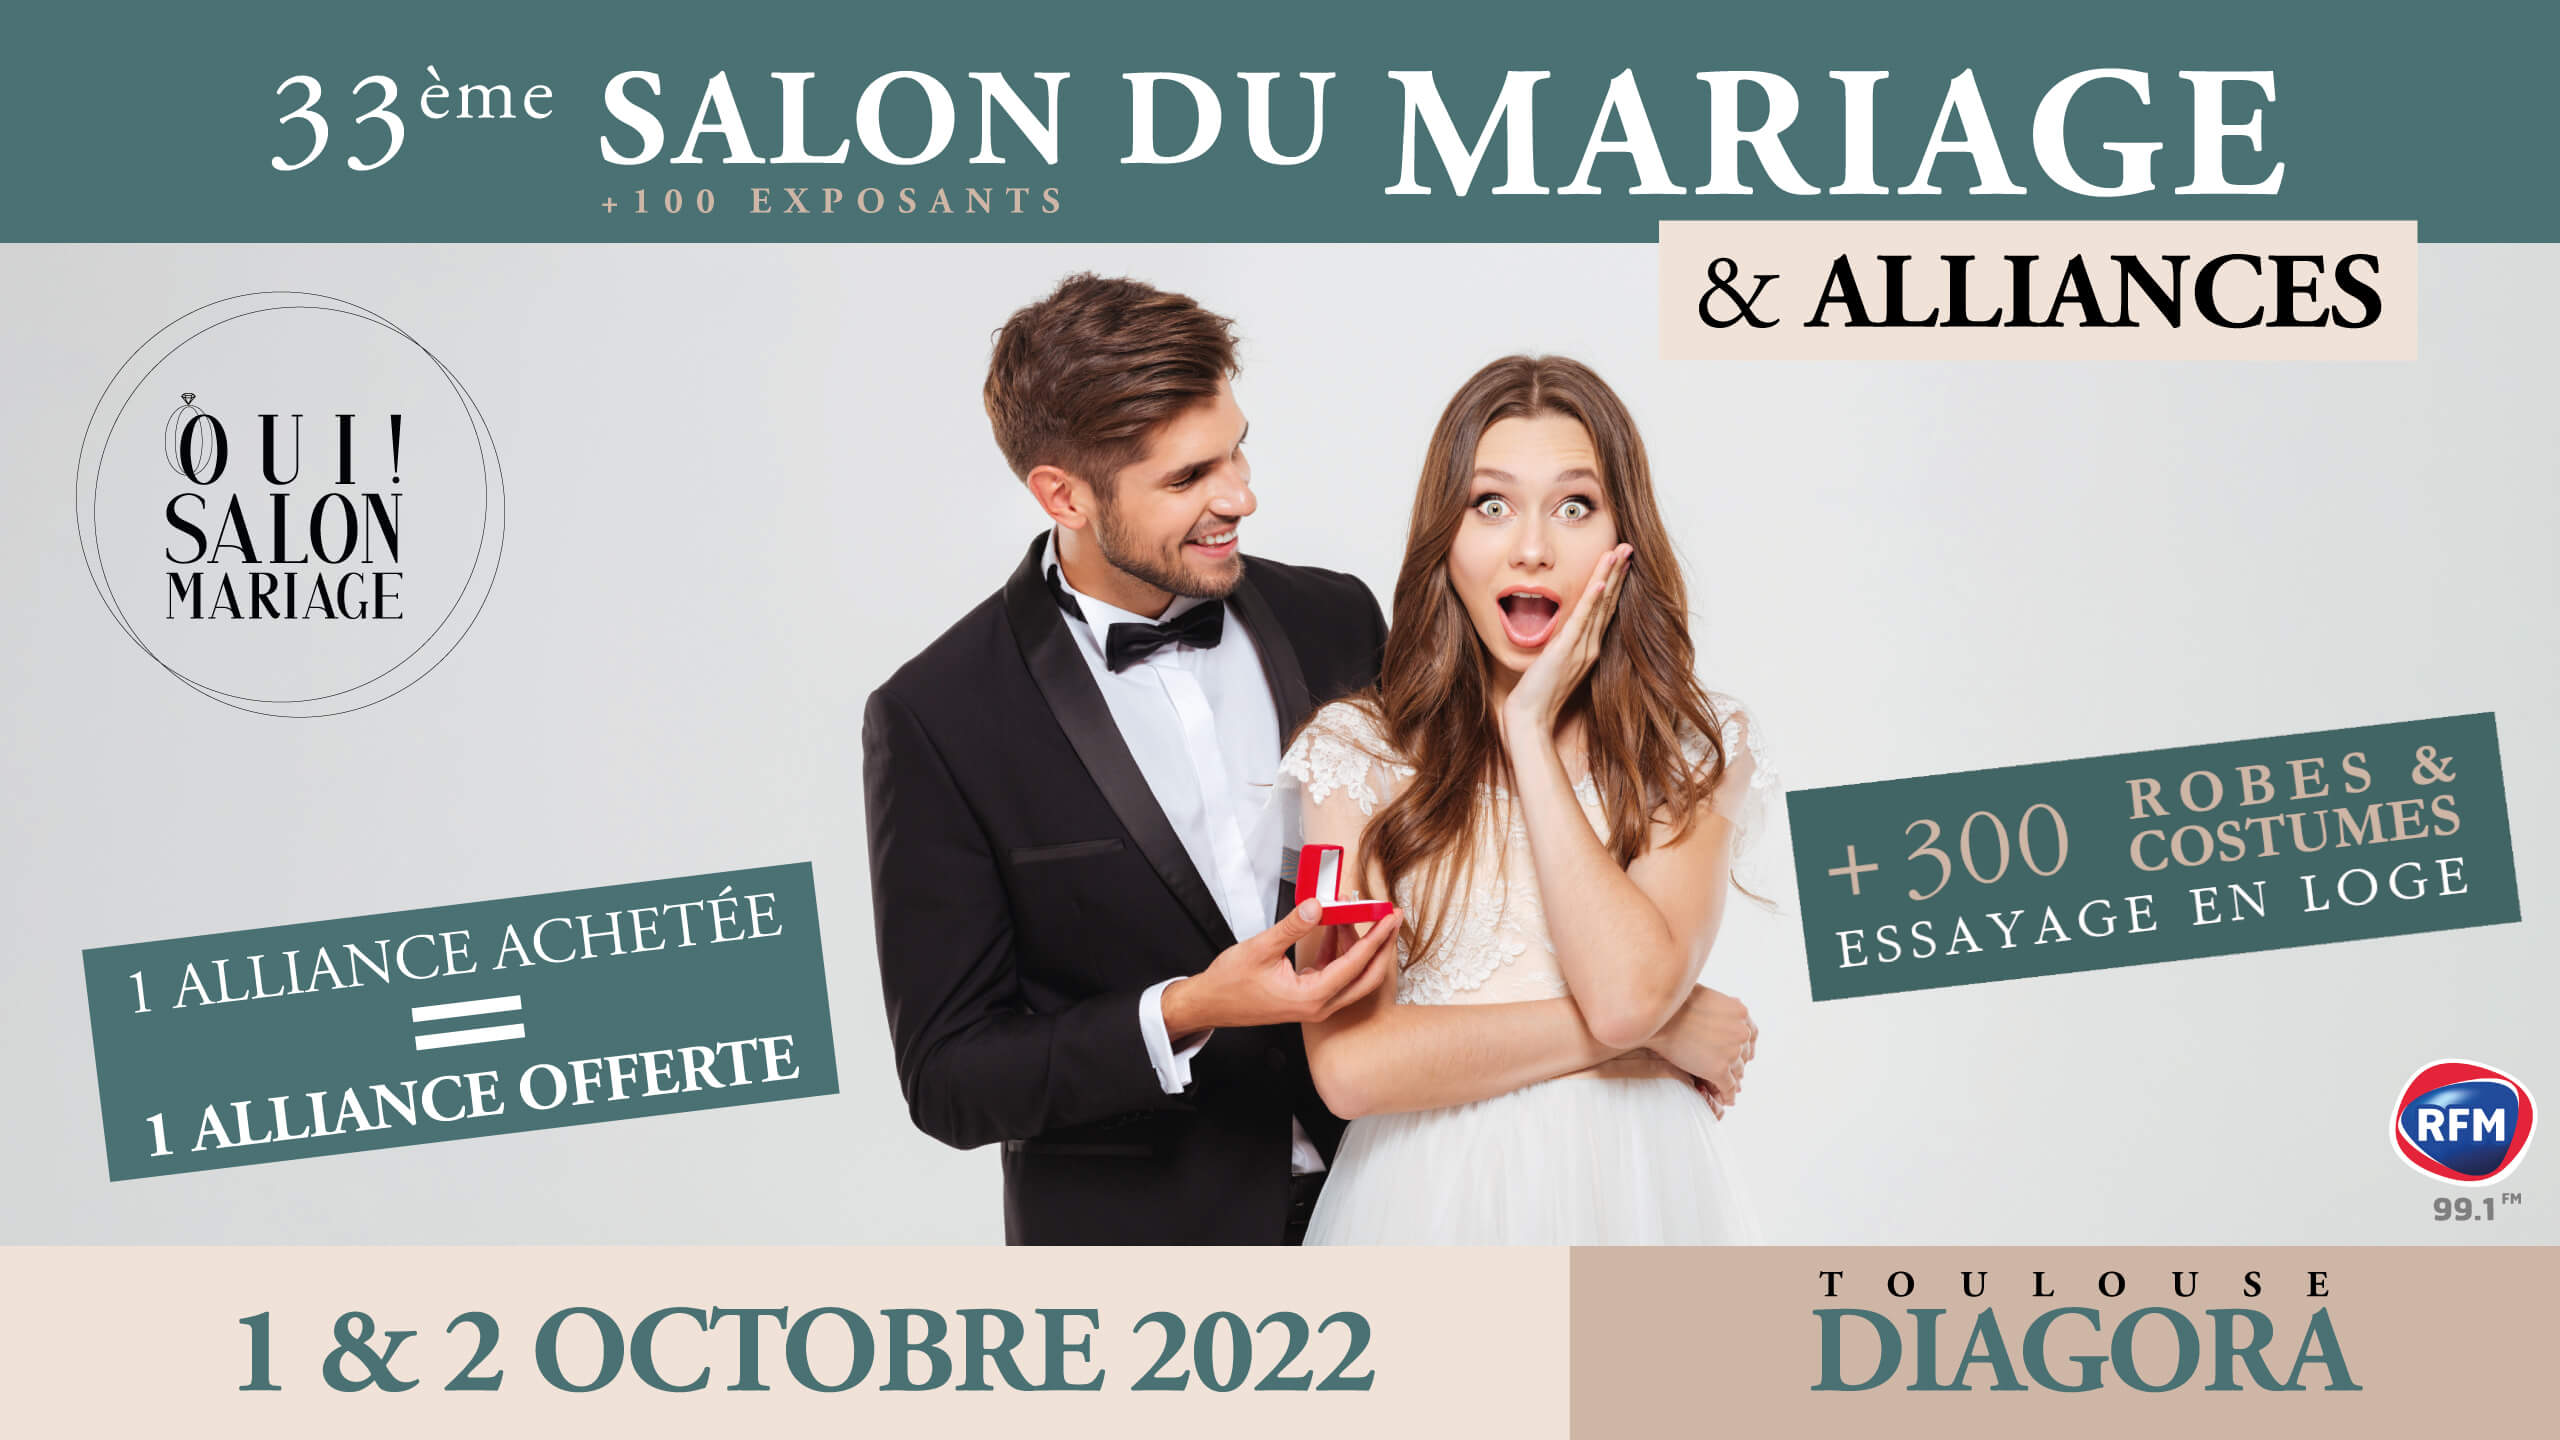 Affiche du 33ème Salon du Mariage et des Alliances, 1&2 Octobre 2022, Toulouse Diagora